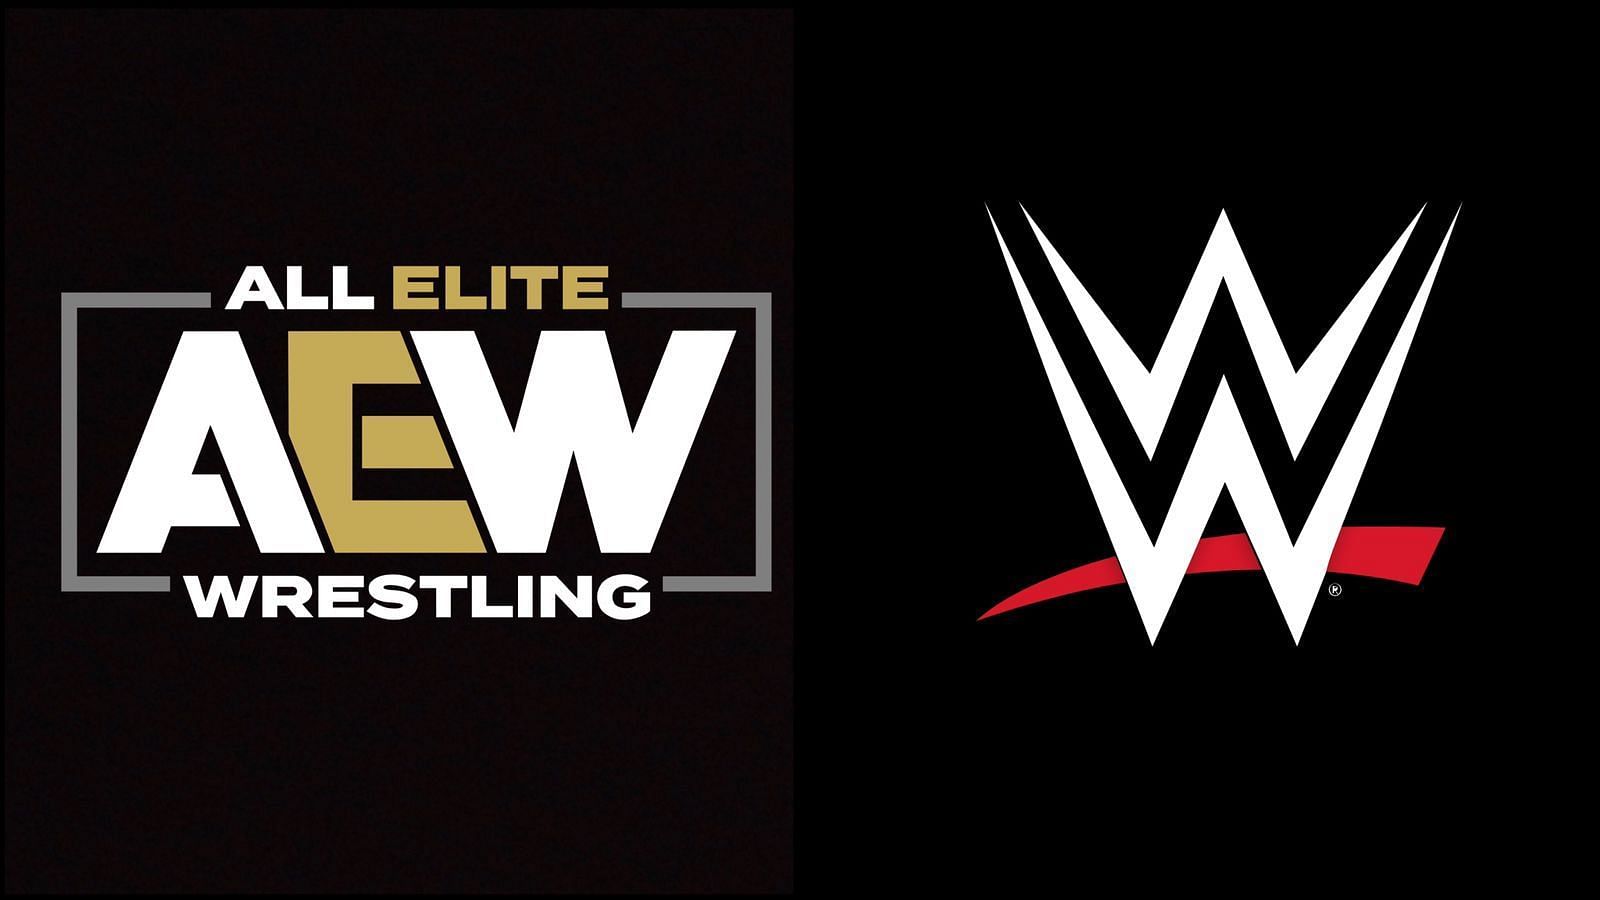  All Elite Wrestling, World Wrestling Entertainment 